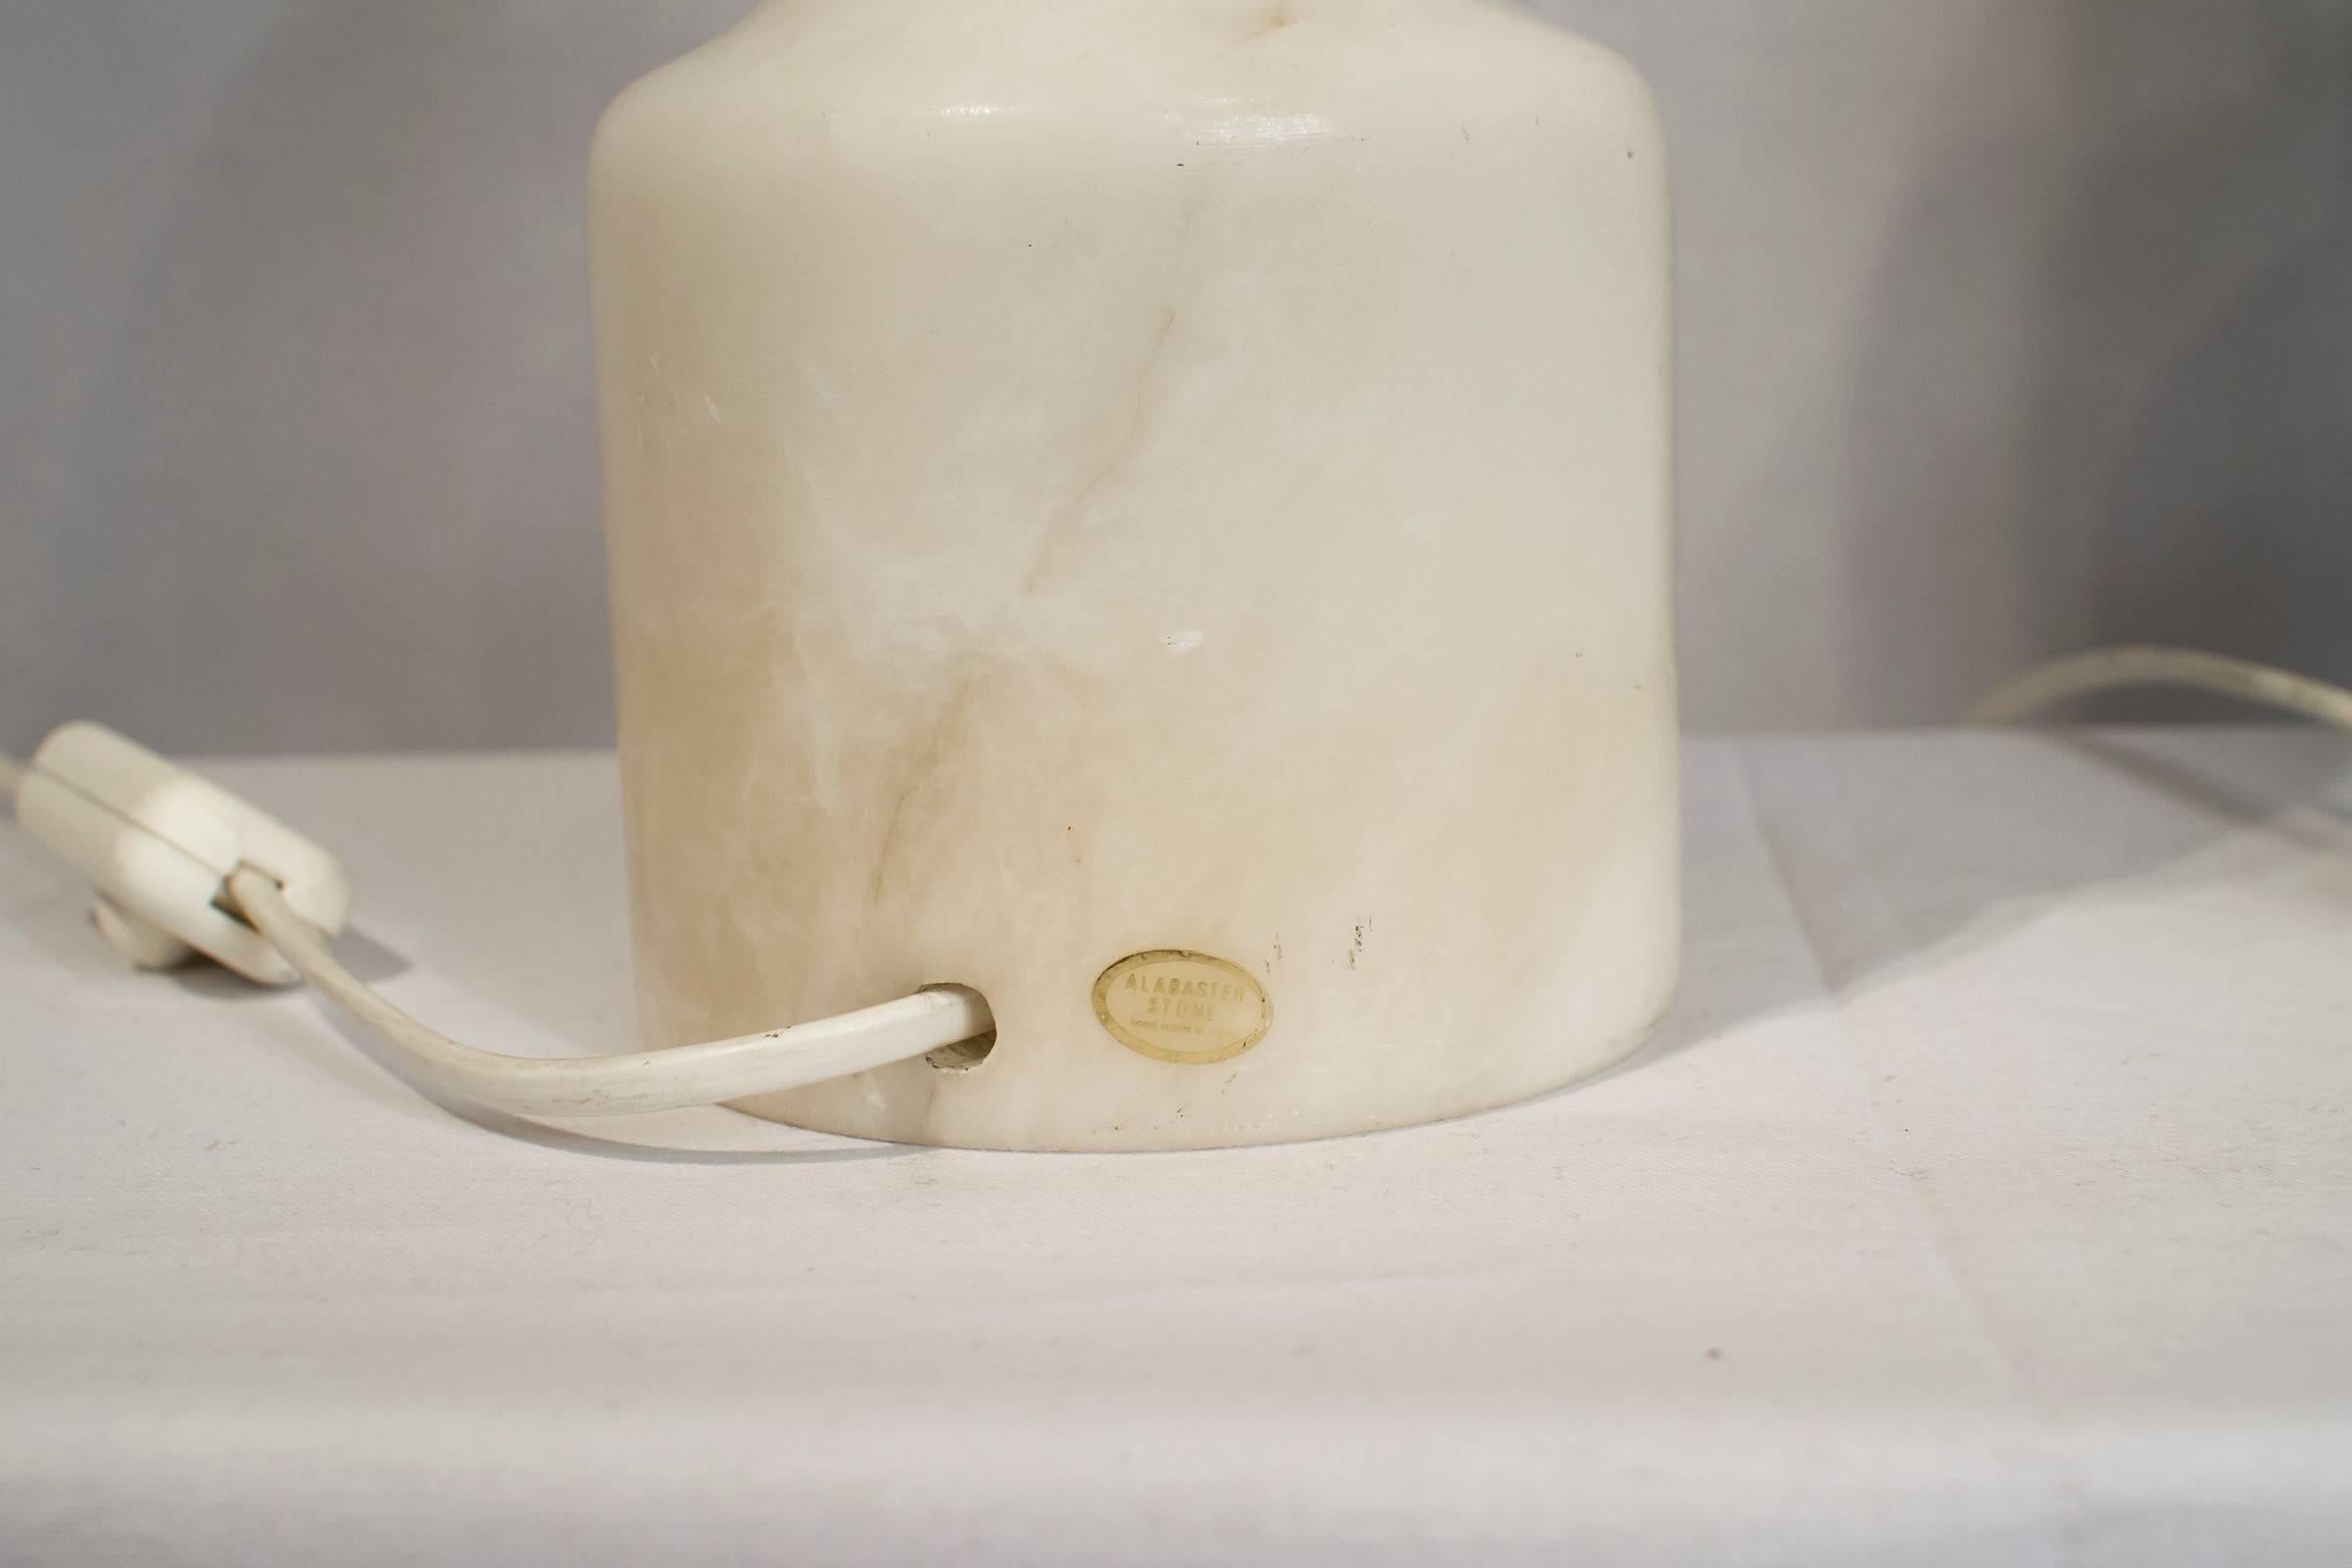 20th Century Pair of Italian Alabaster Lamps